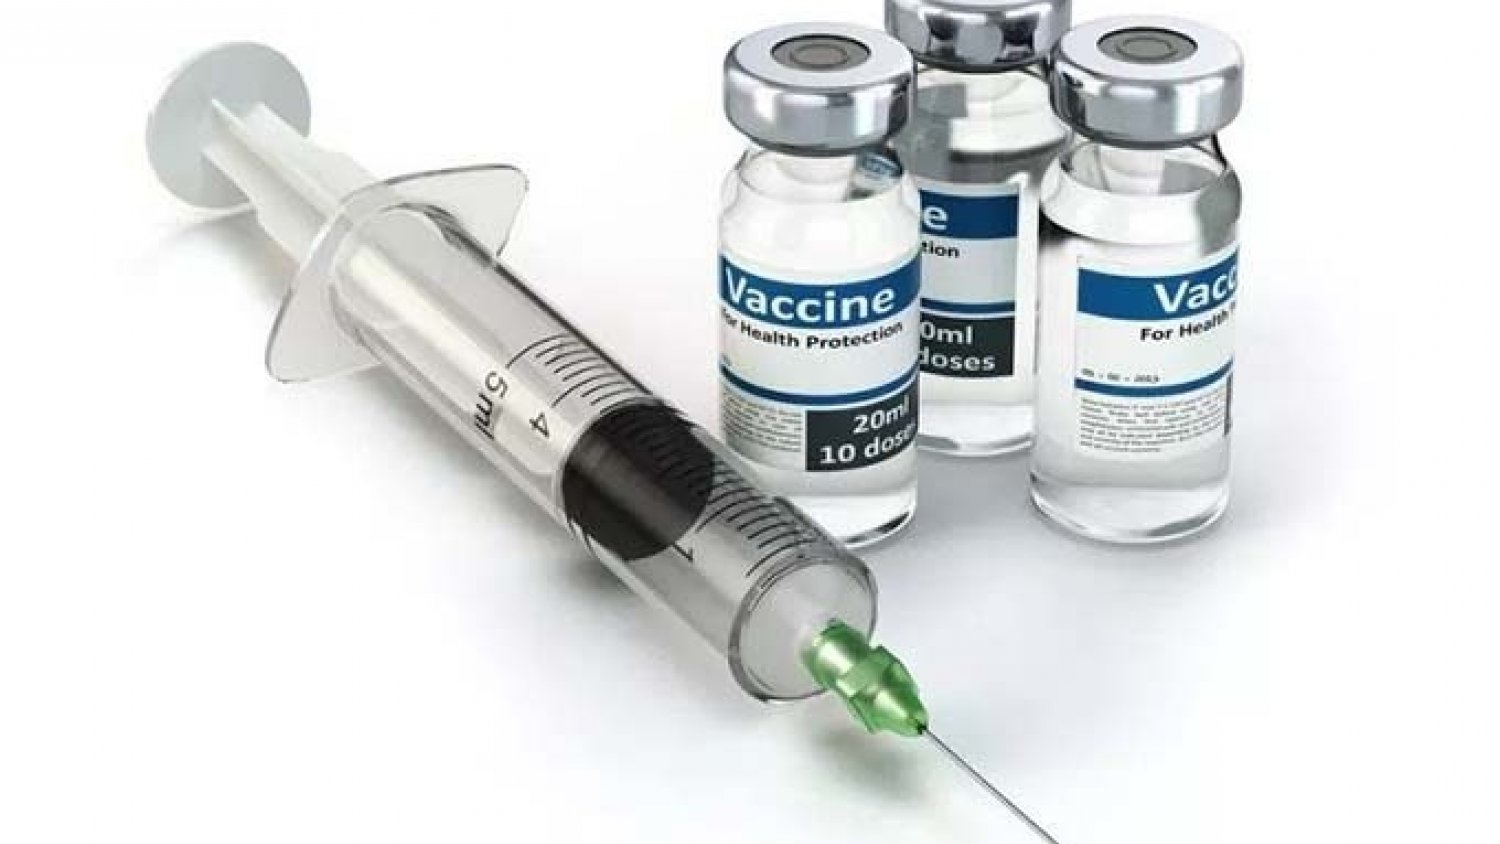 La campaña de vacunación contra la gripe se llevará a cabo el lunes 19 de noviembre